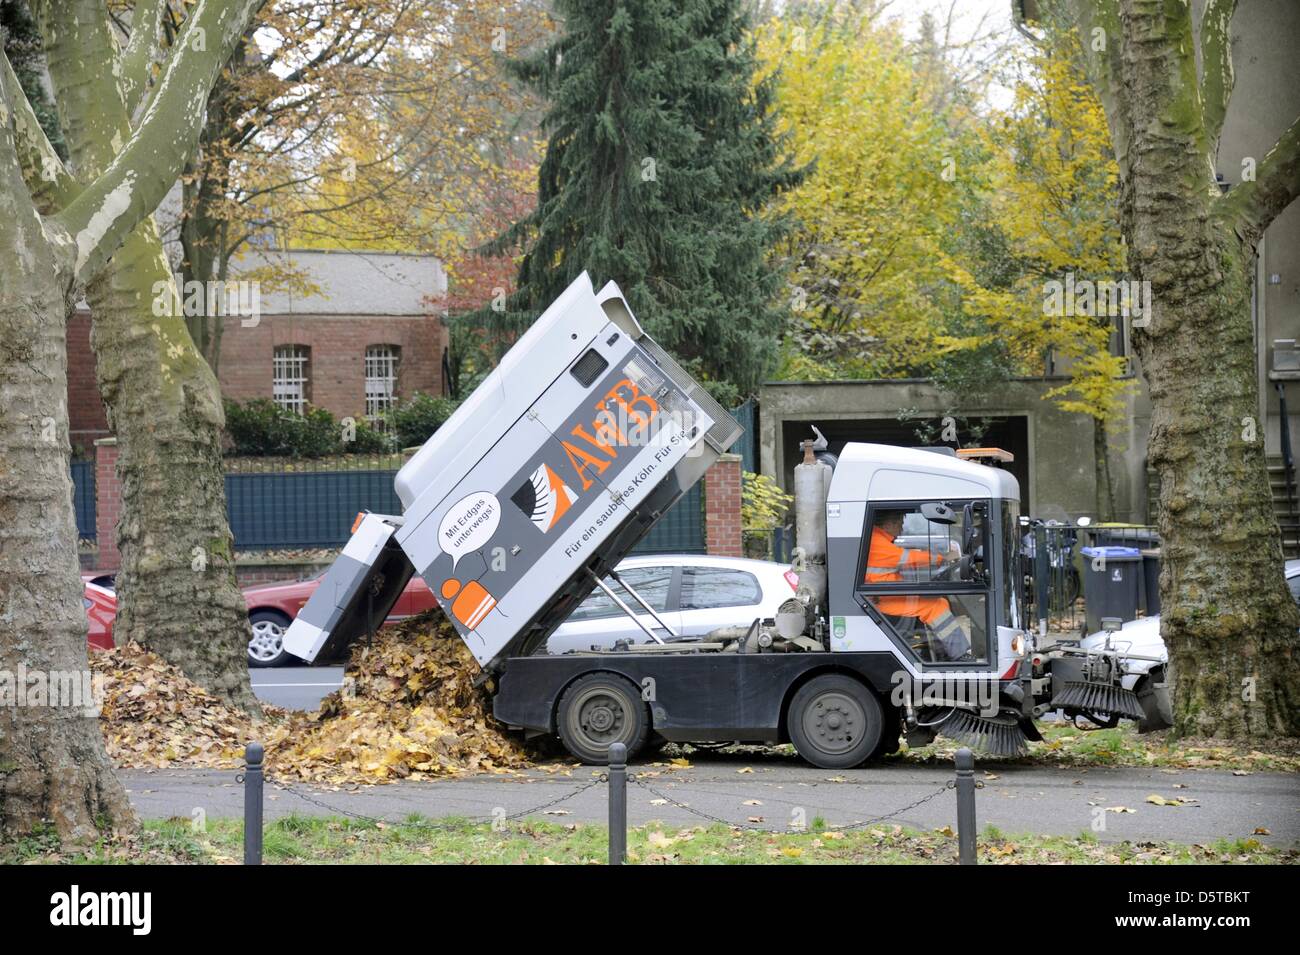 Ein Kölner Waste Management Fahrzeug (AWB) Deponien aus einem Stapel von Herbstlaub in Köln, Deutschland, 18. November 2012. Foto: Horst Galuschka Stockfoto